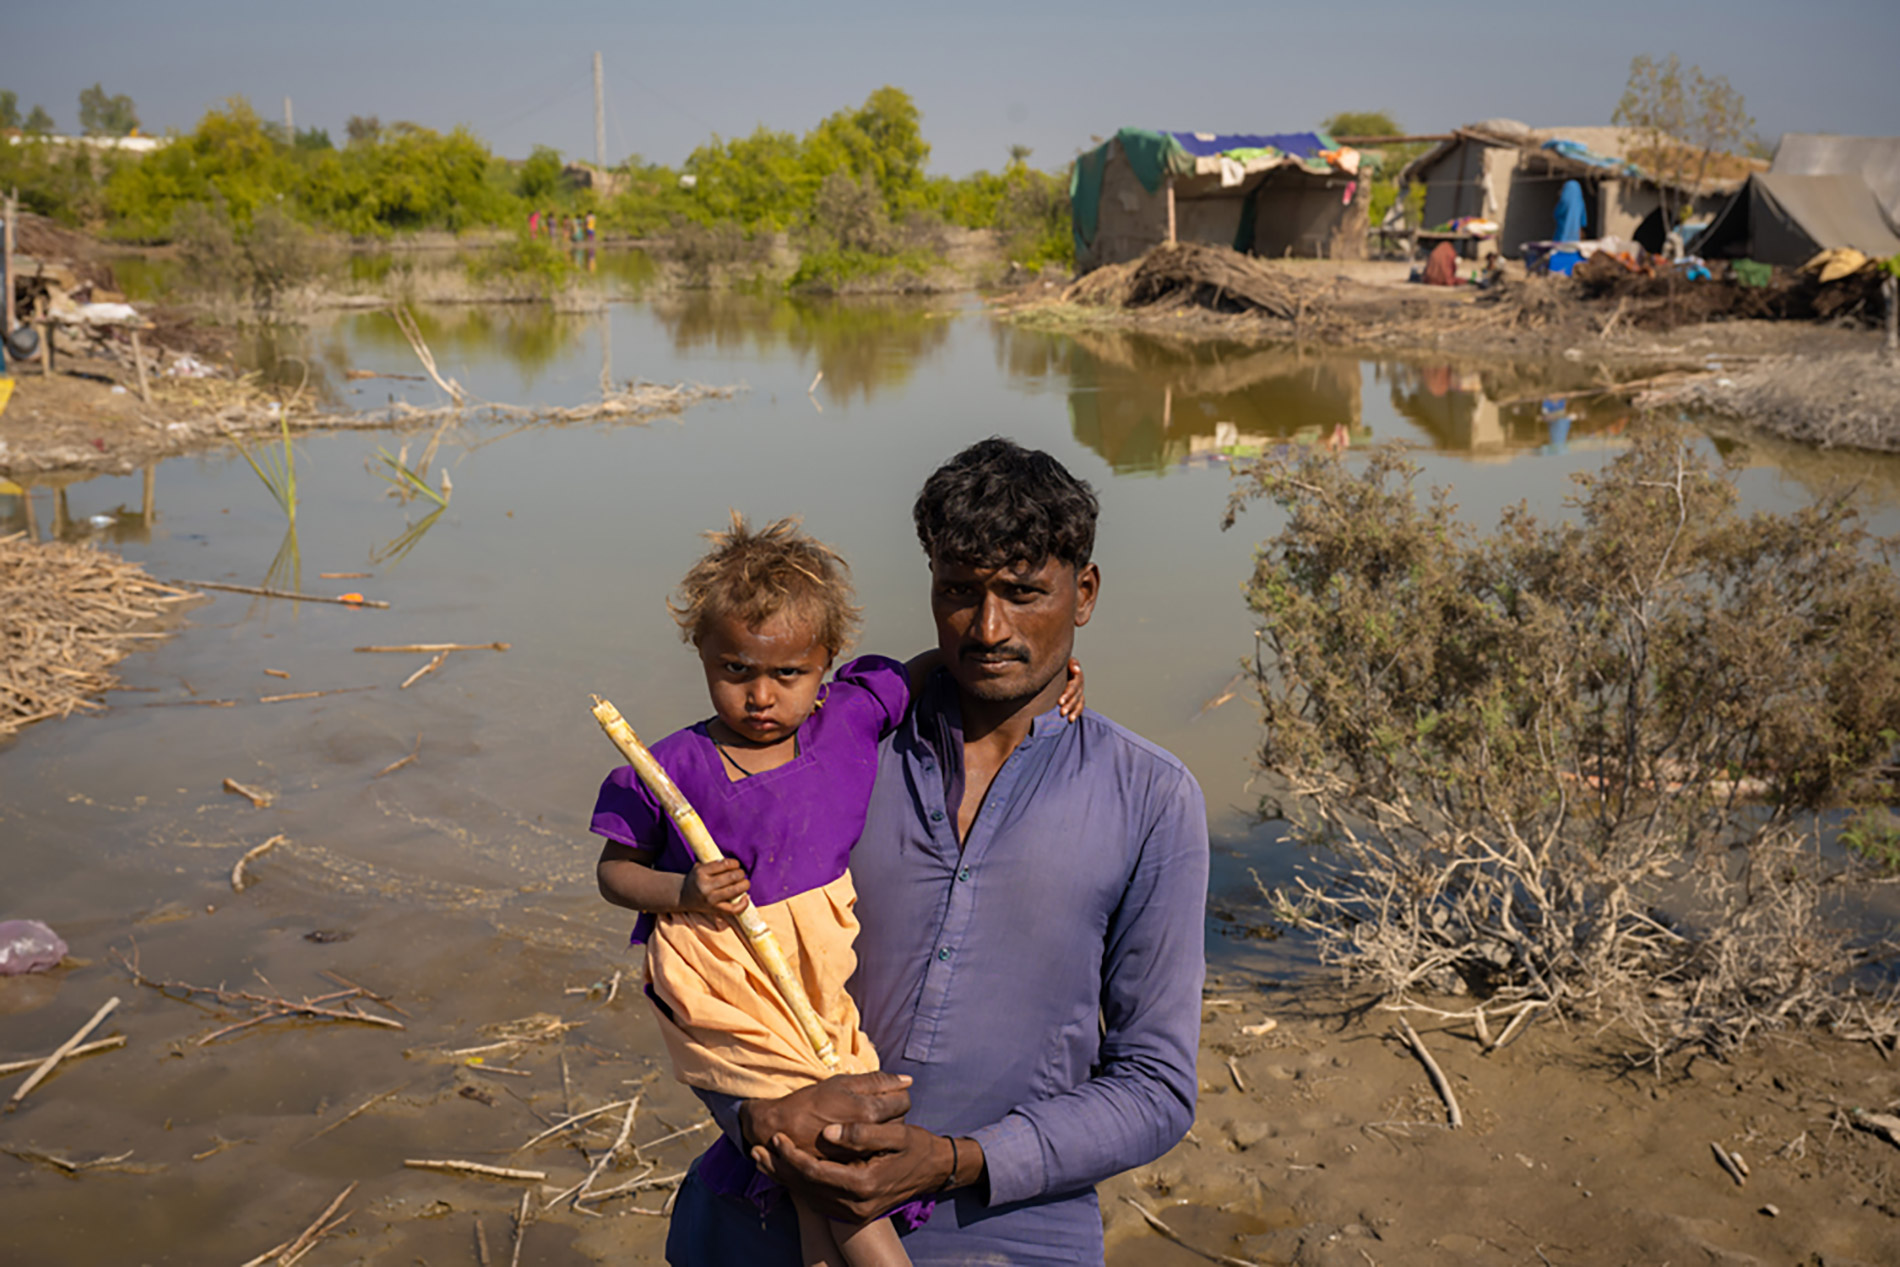 Mann med barn på armen i pakistan